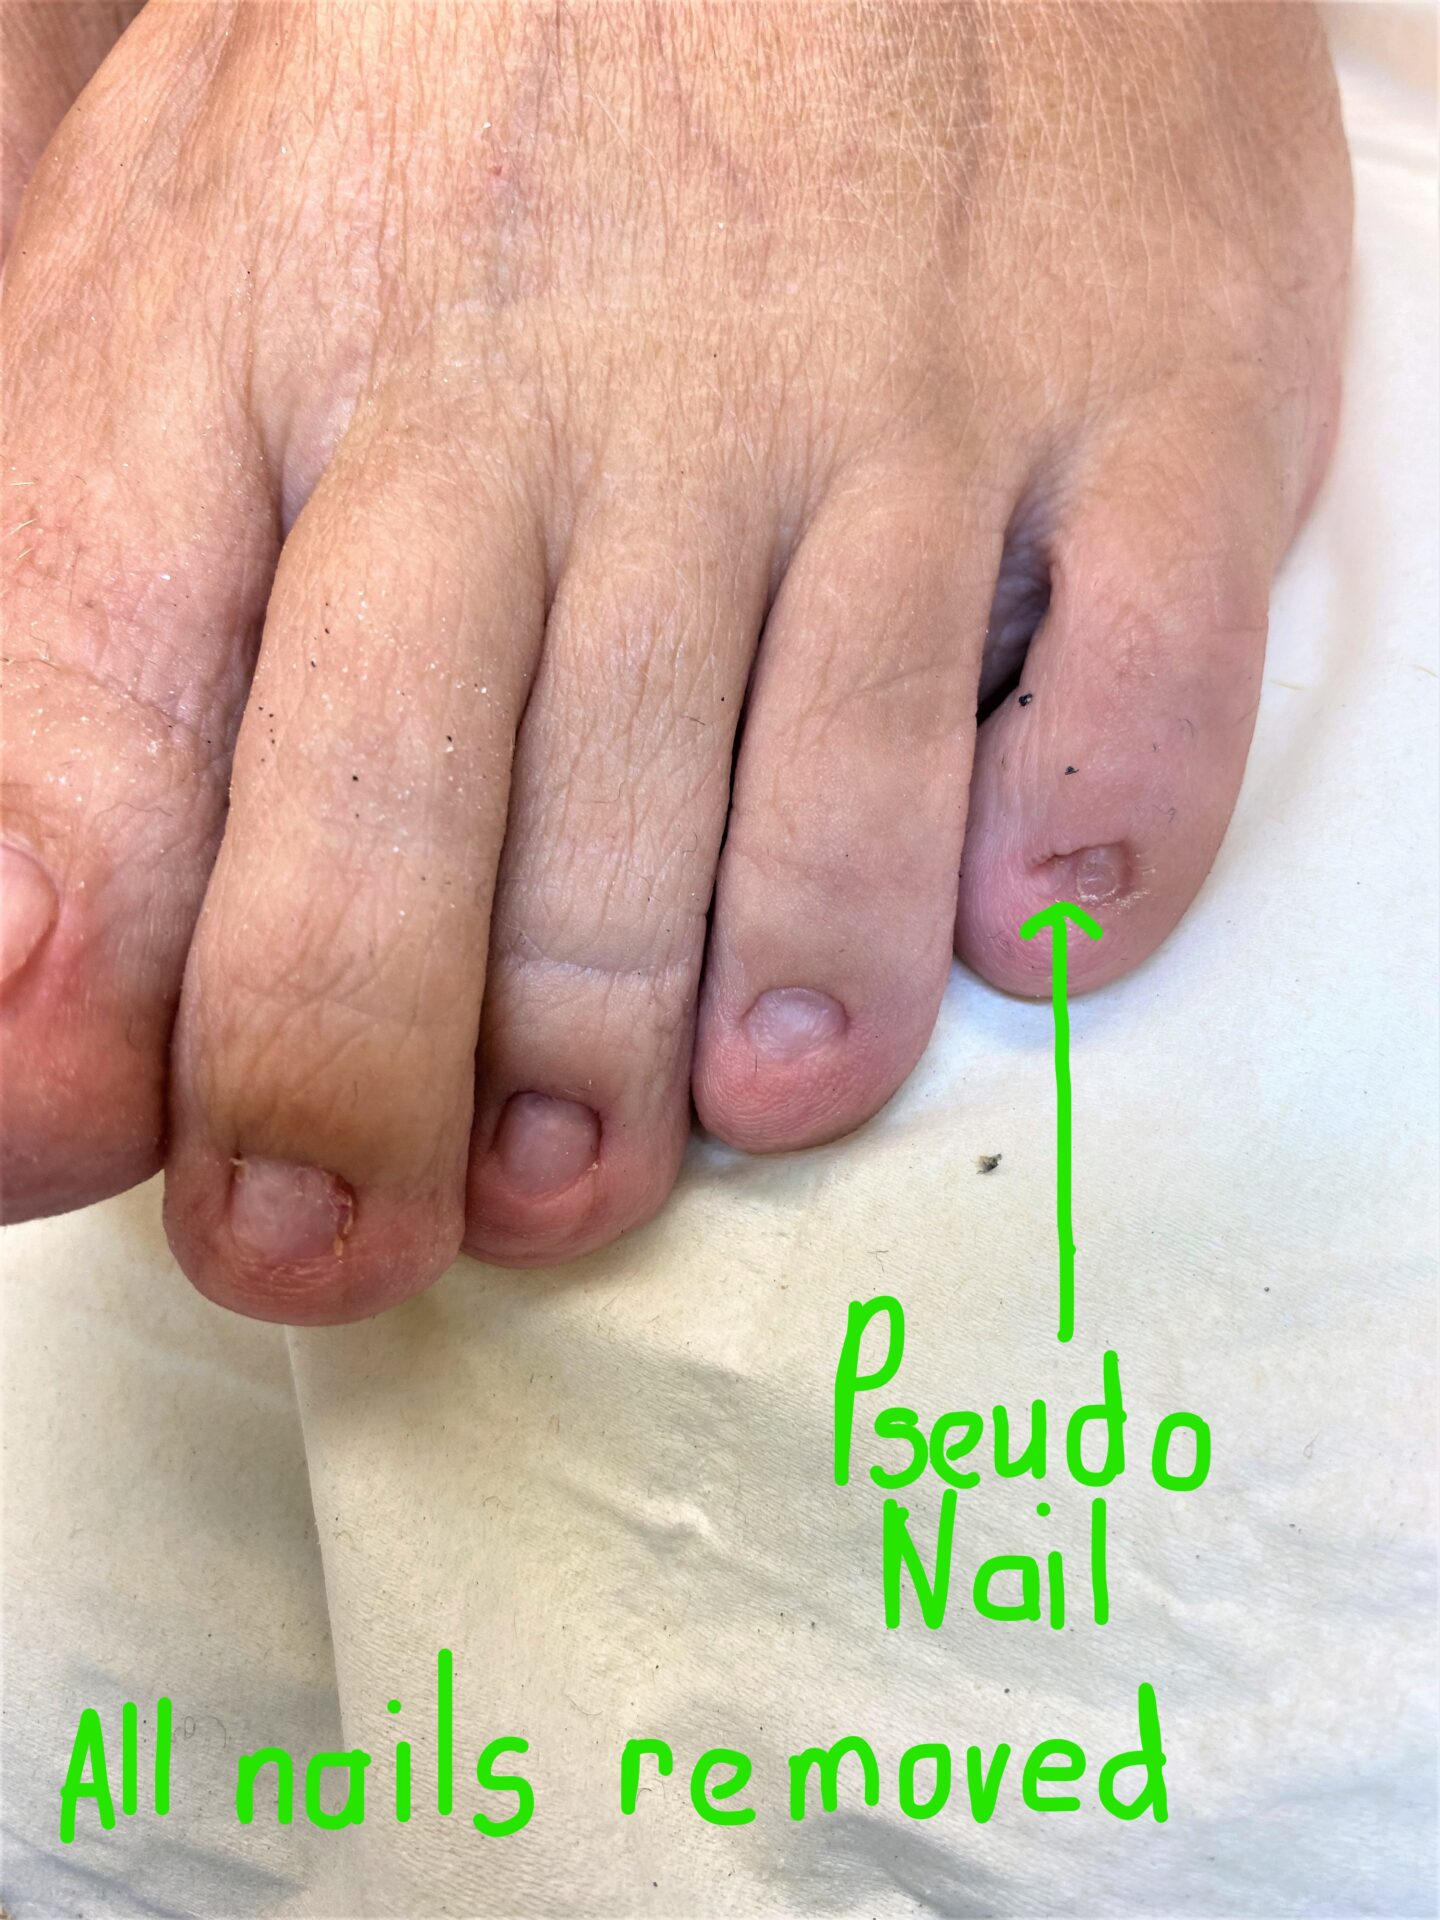 Pseudo nail left after permanent nail surgery